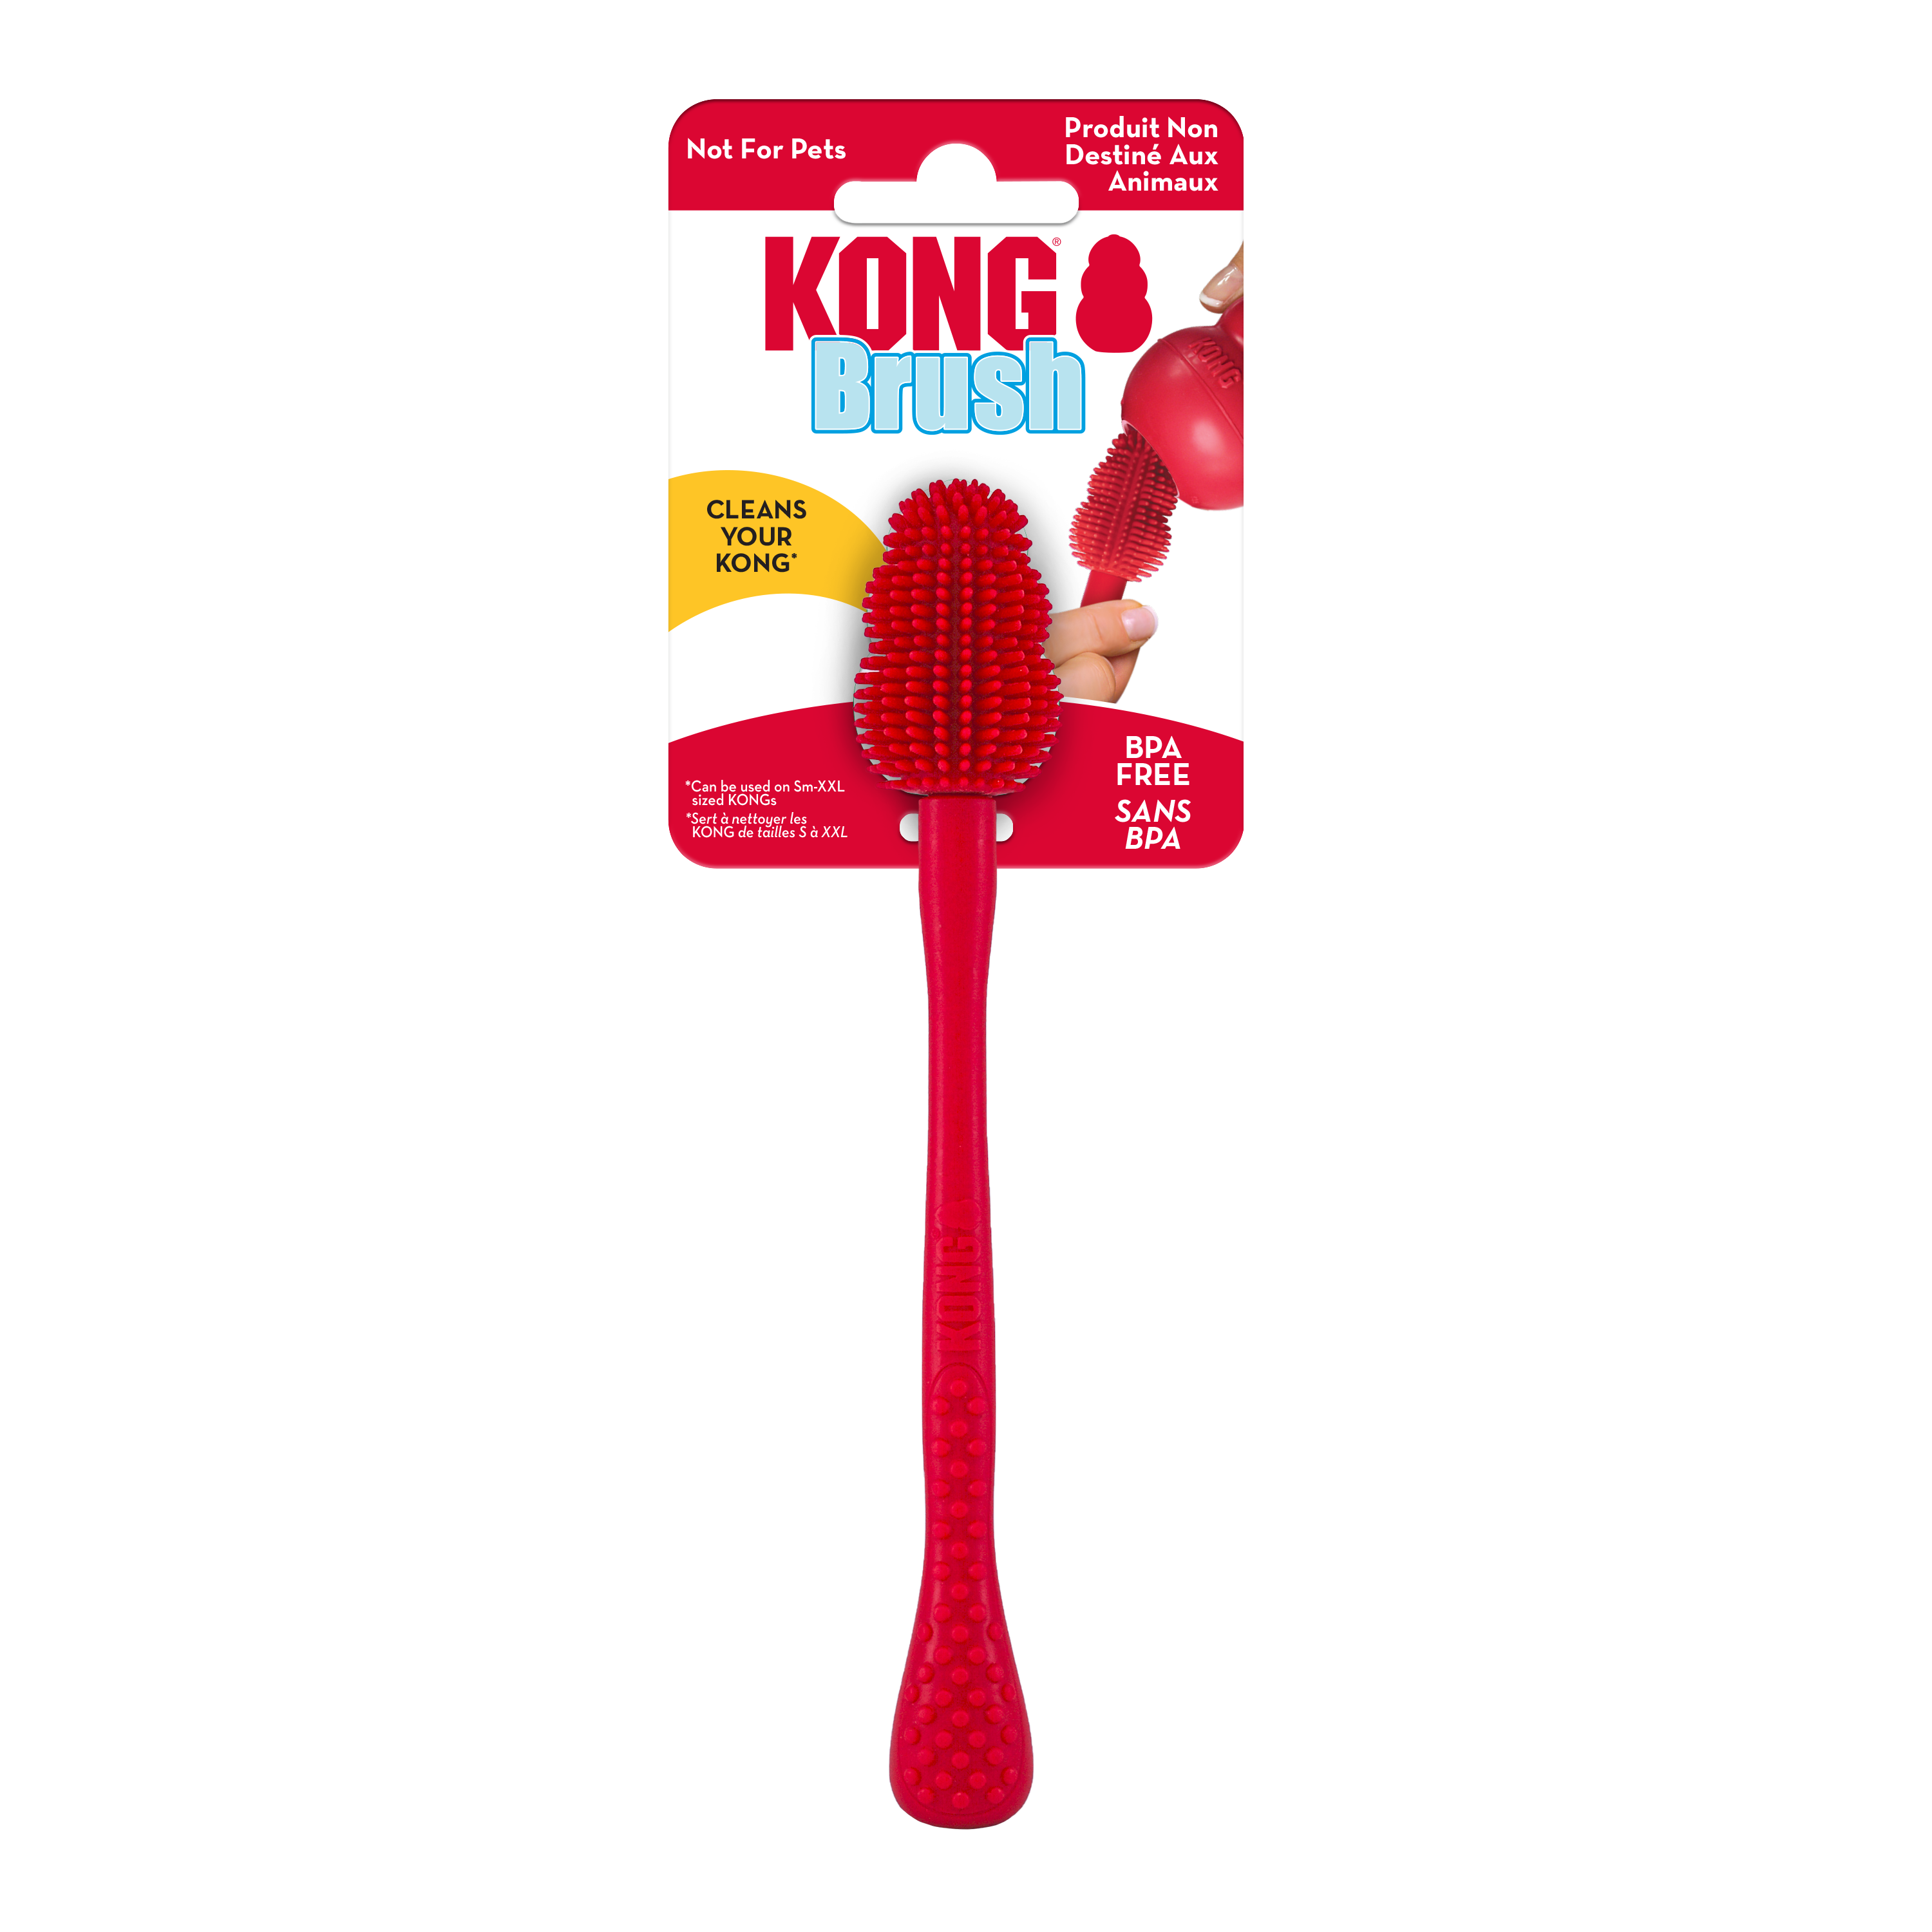 KONG Cleaning Brush onpack termékkép